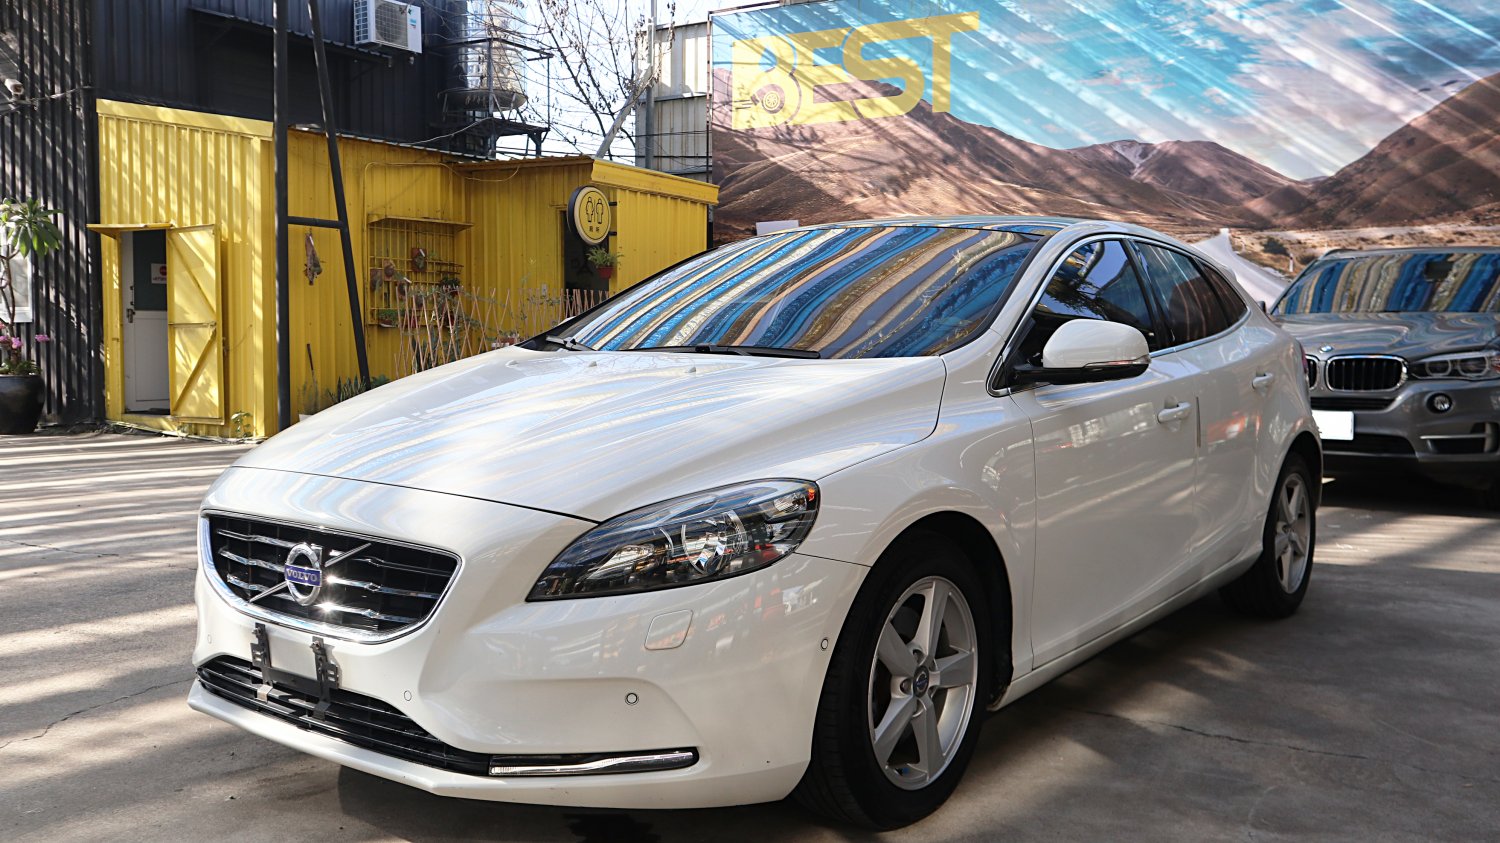 Volvo 富豪 ／ V40 ／ 2013年 ／ 2013年VOLVO V40  白色 富豪中古車 ／ 九州欣旺汽車 (台南)